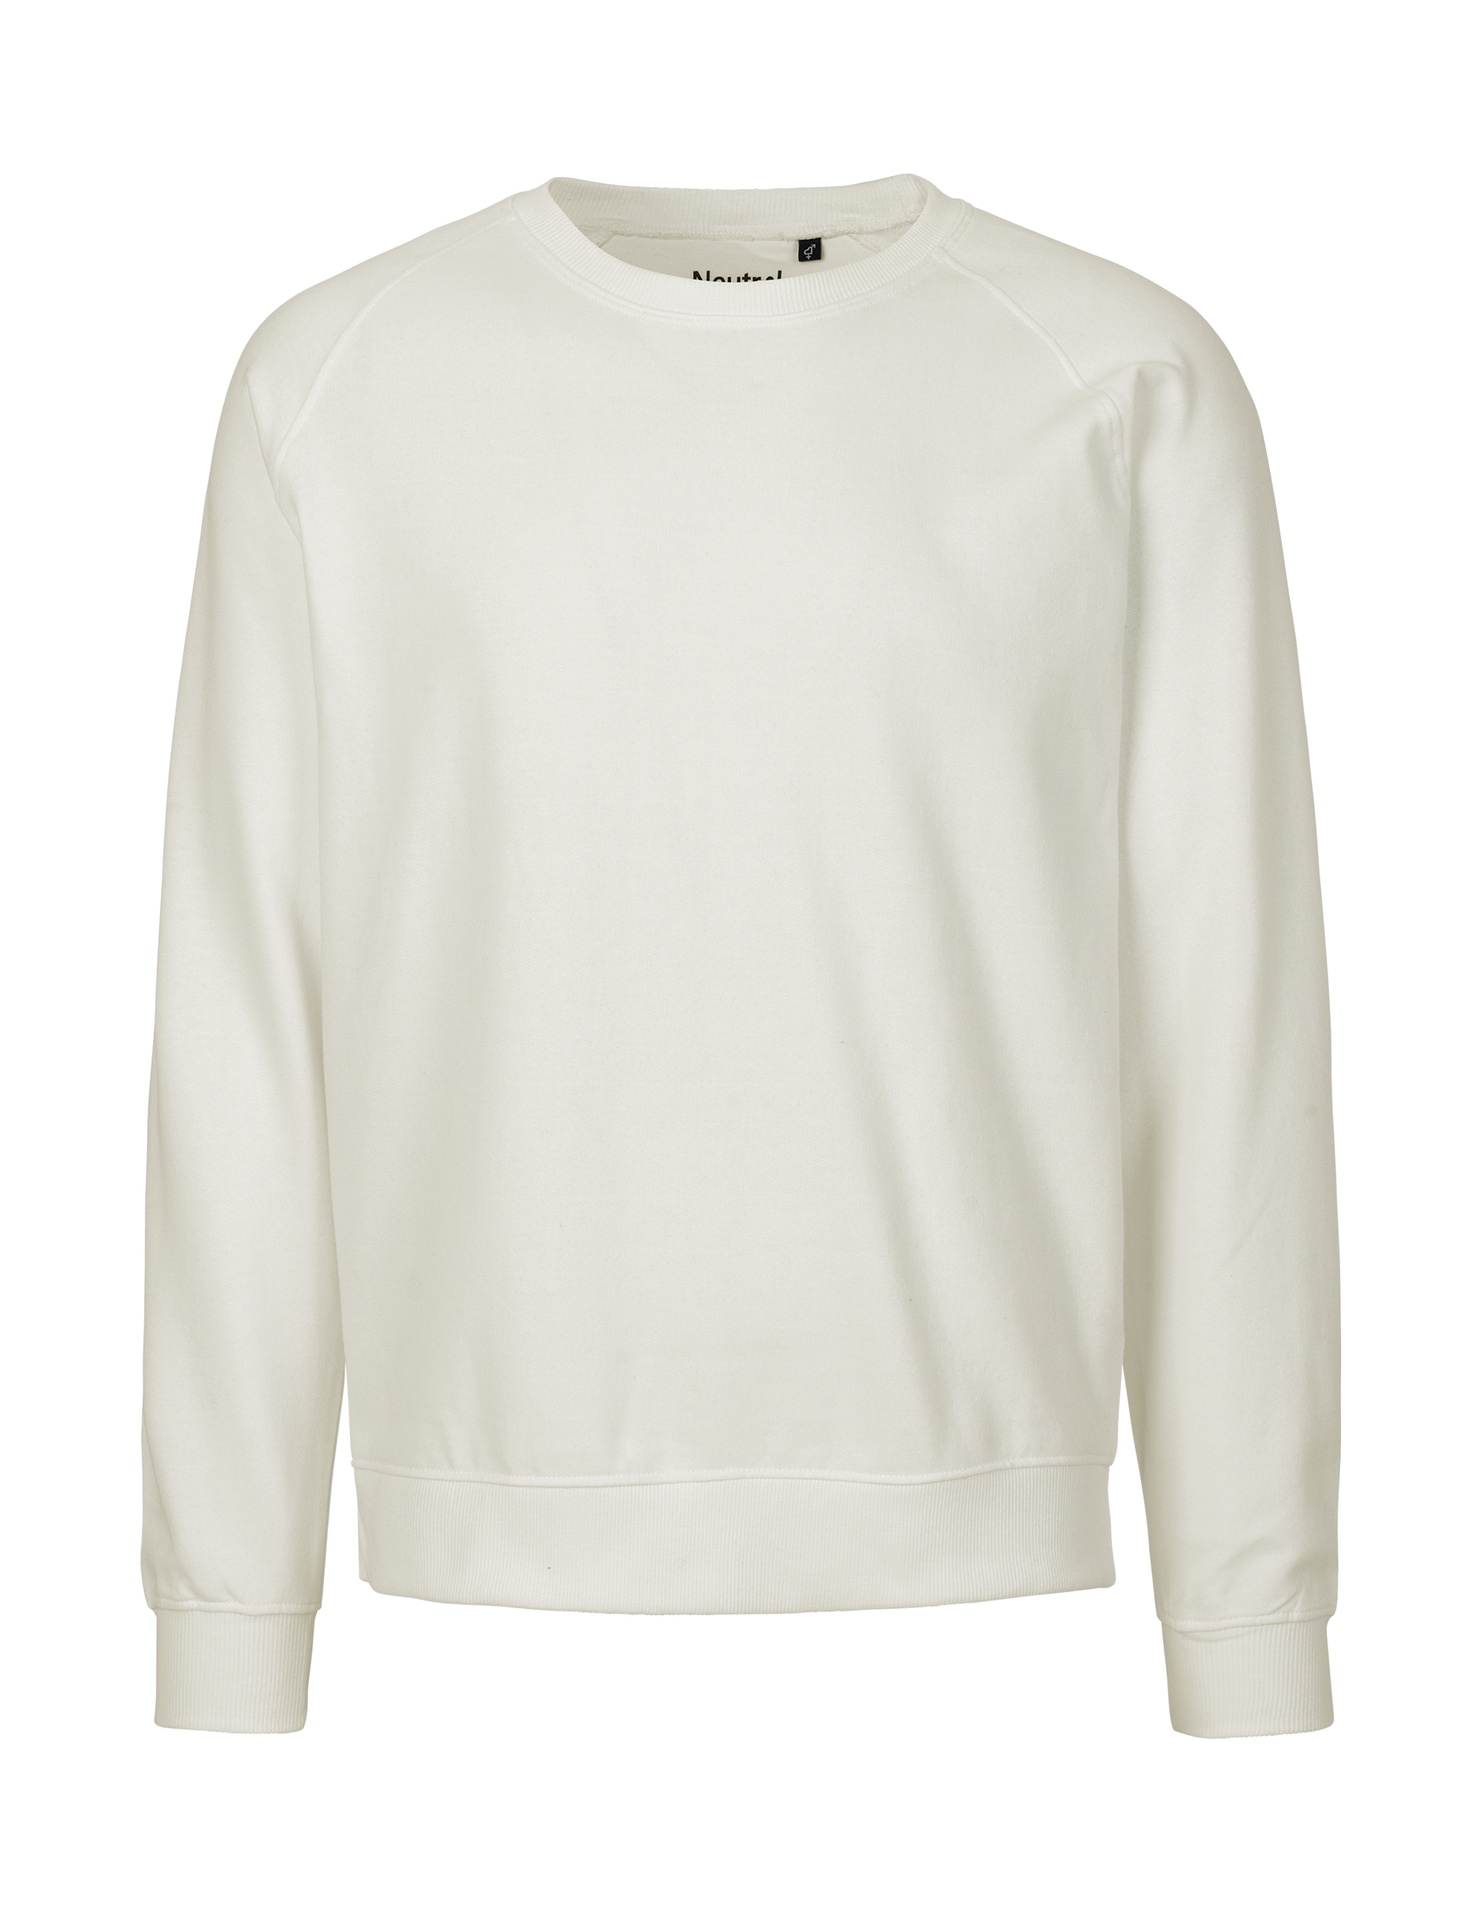 [PR/02647] Unisex Sweatshirt (Nature 00, XL)